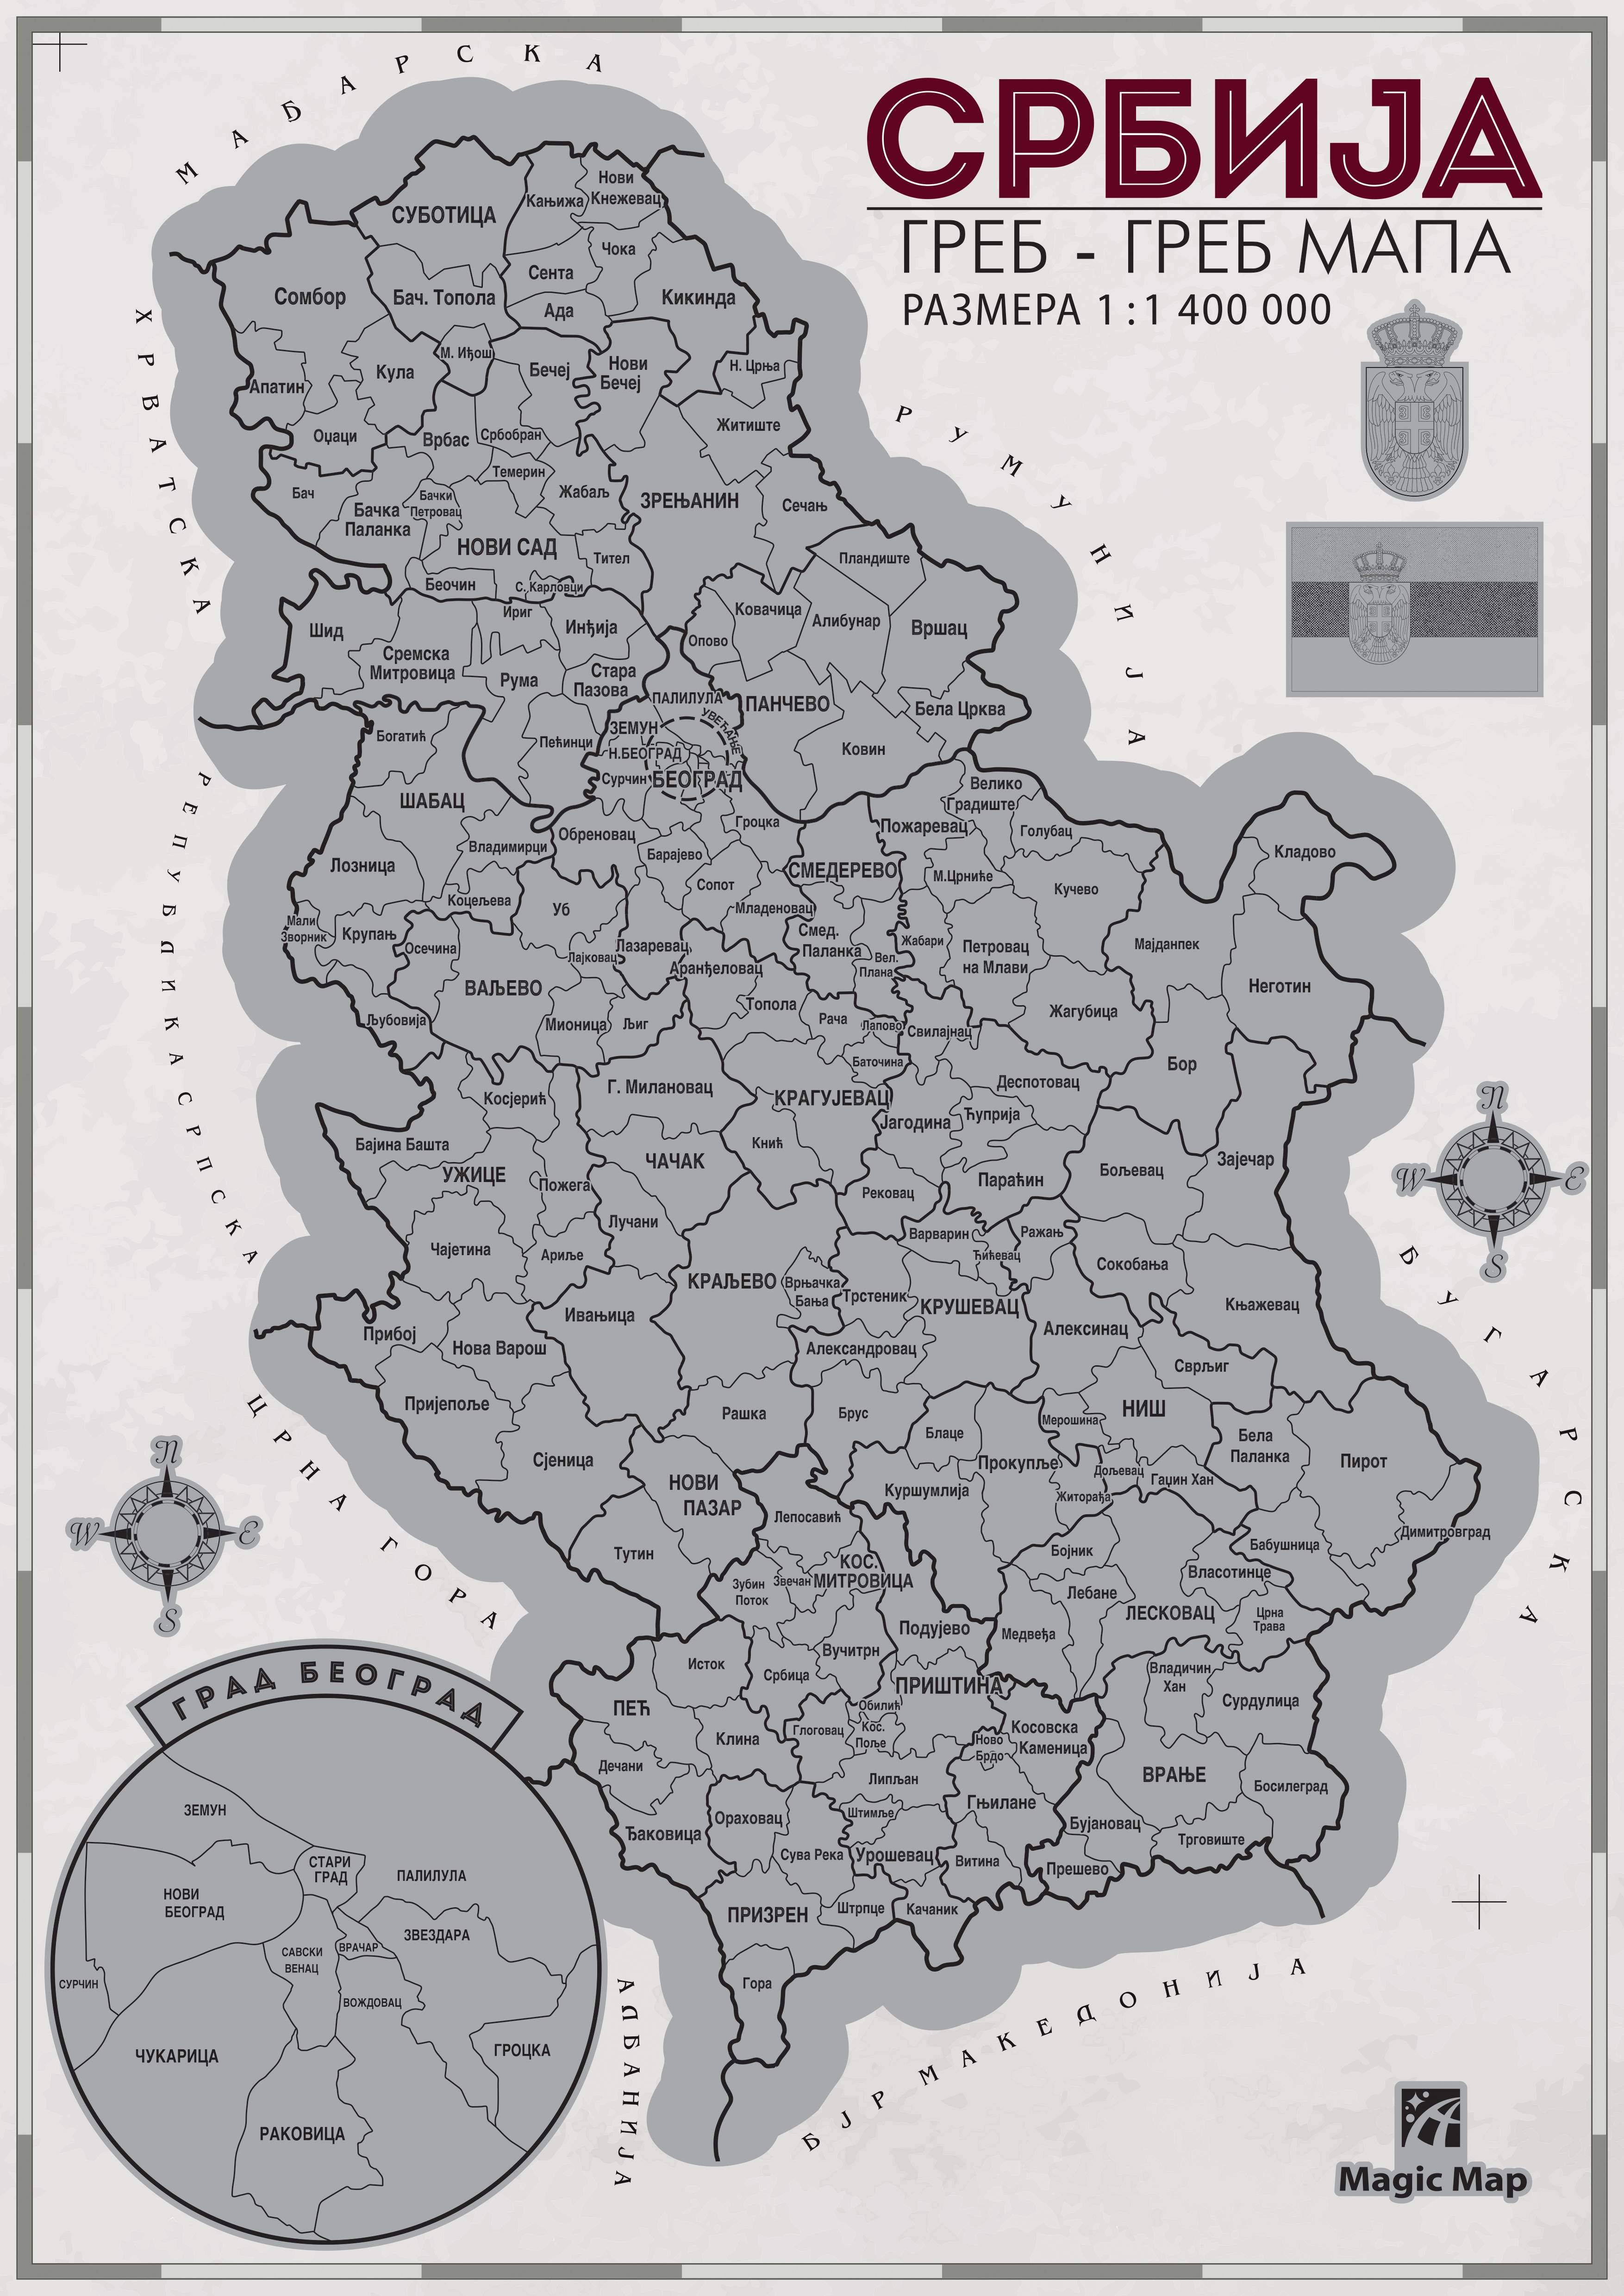 Greb-greb mapa Srbije